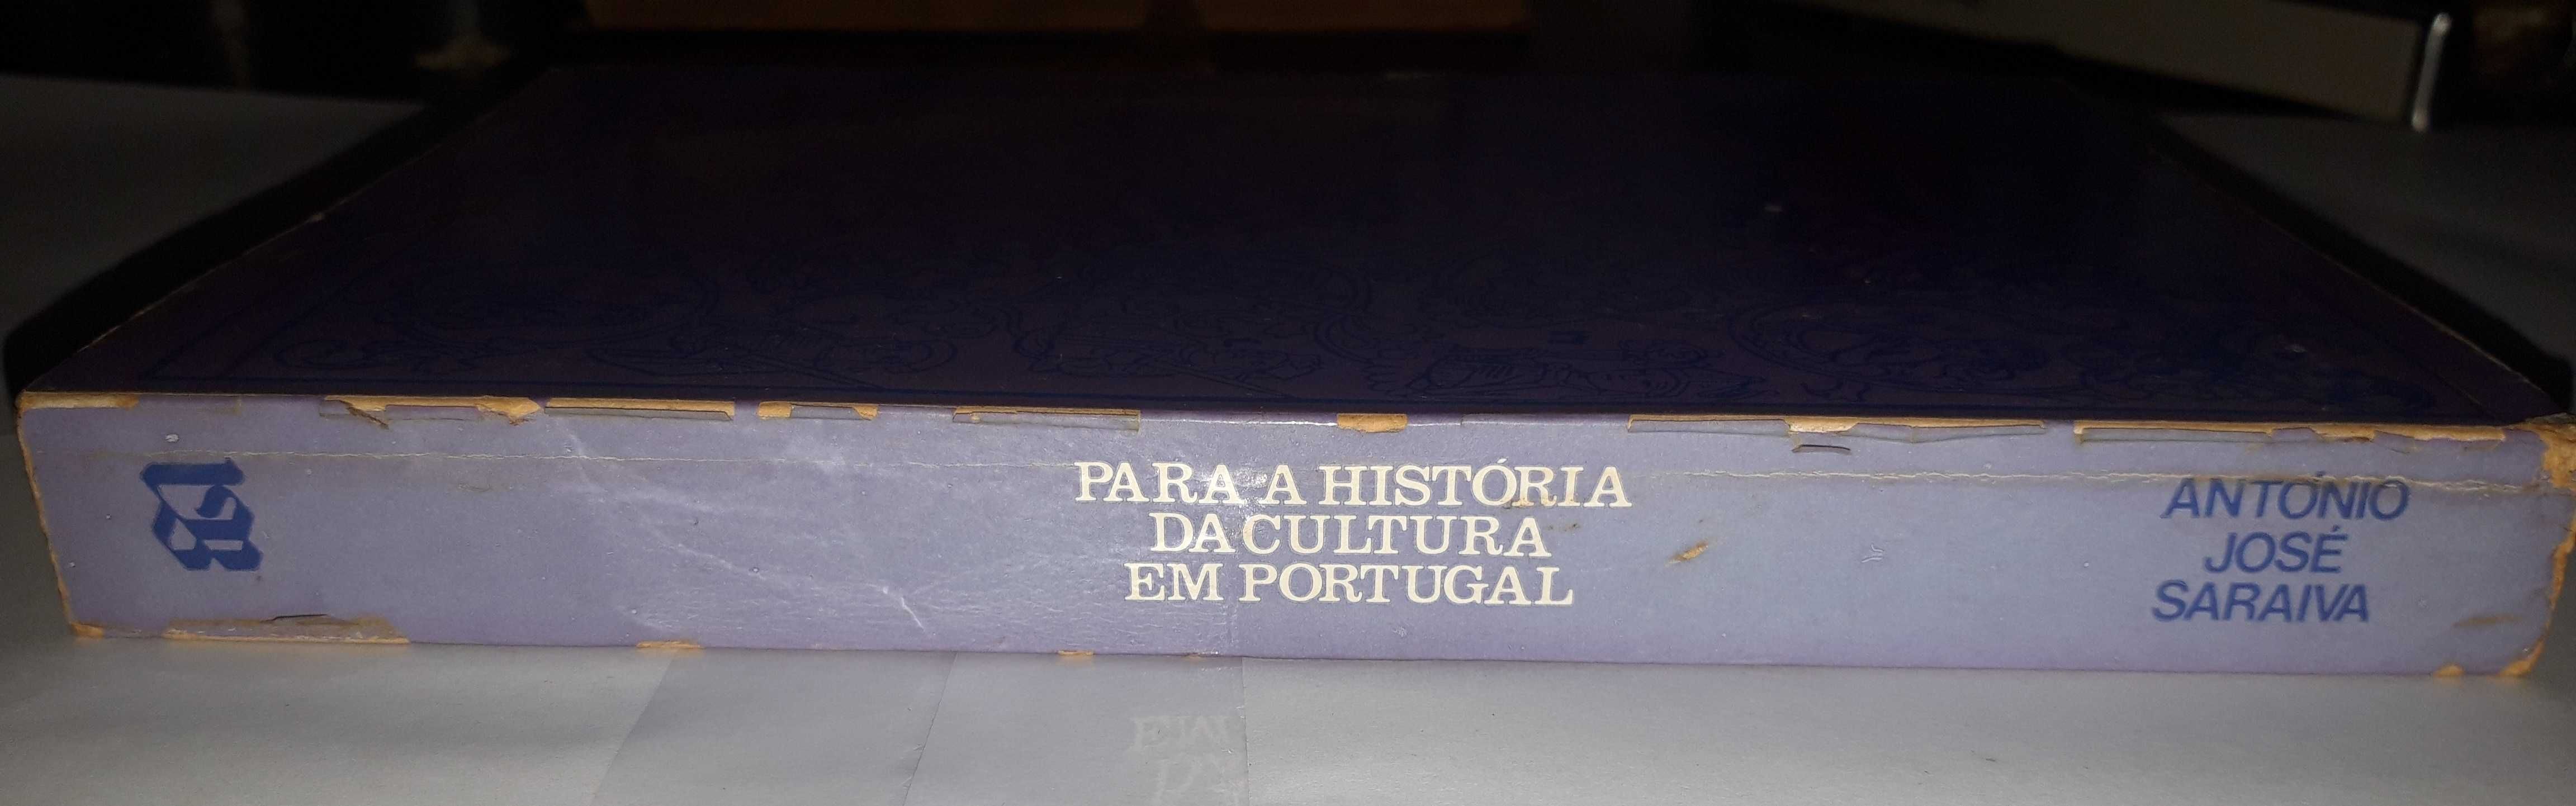 Livro Ref Par1  - A. J. Saraiva - Para a Historia Cultura em Portugal